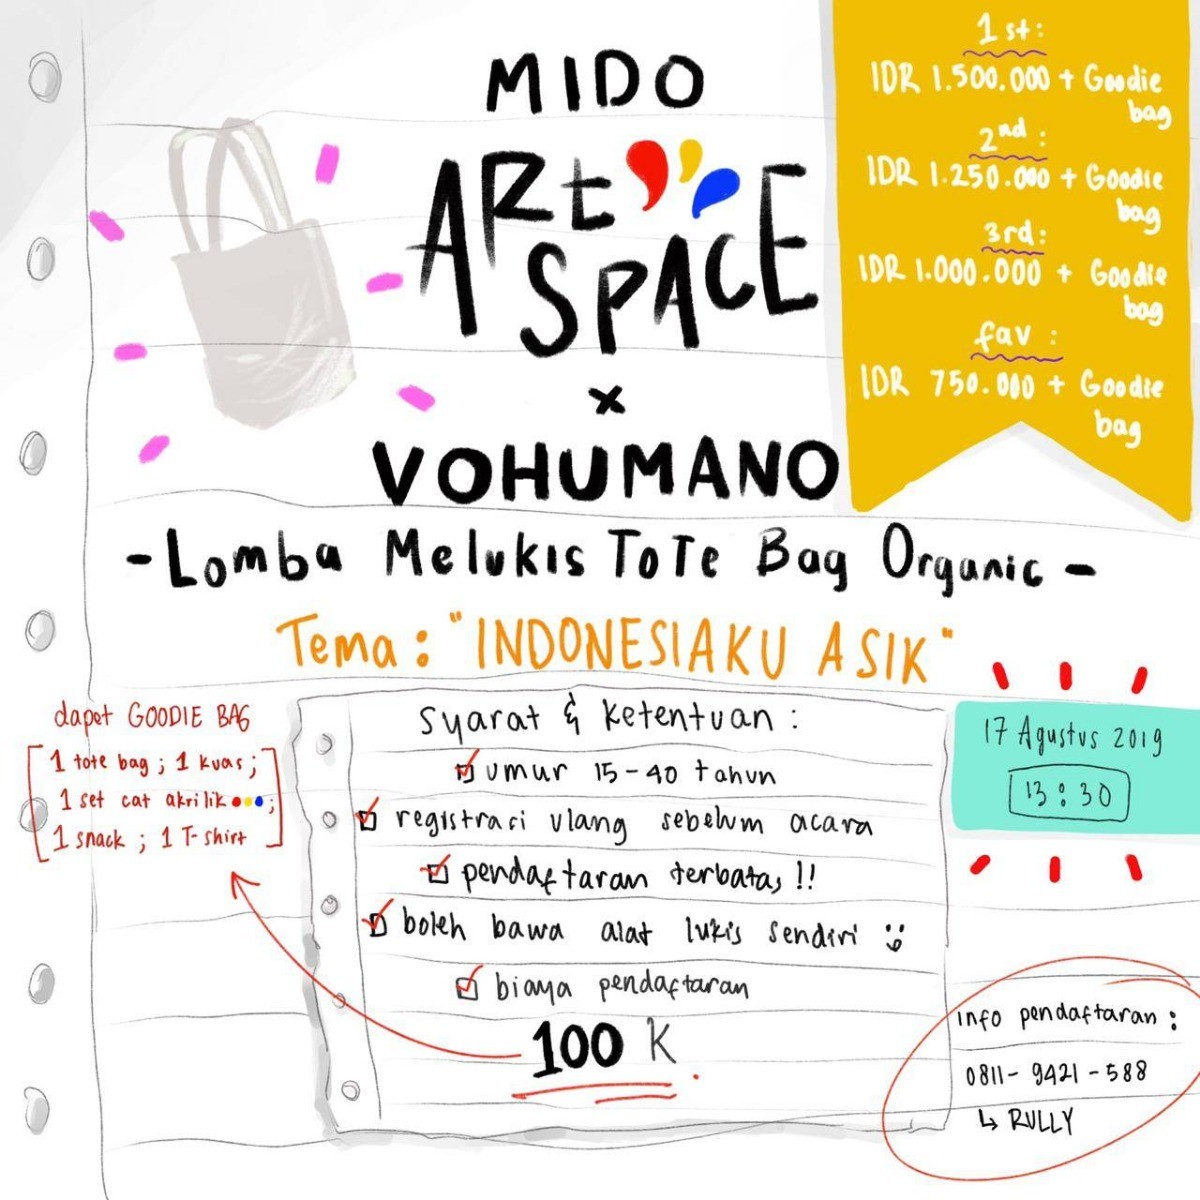 Poster MIDO ART SPACE X VOHUMANO mempersembahkan "Lomba Melukis Tote Bag Organic?"